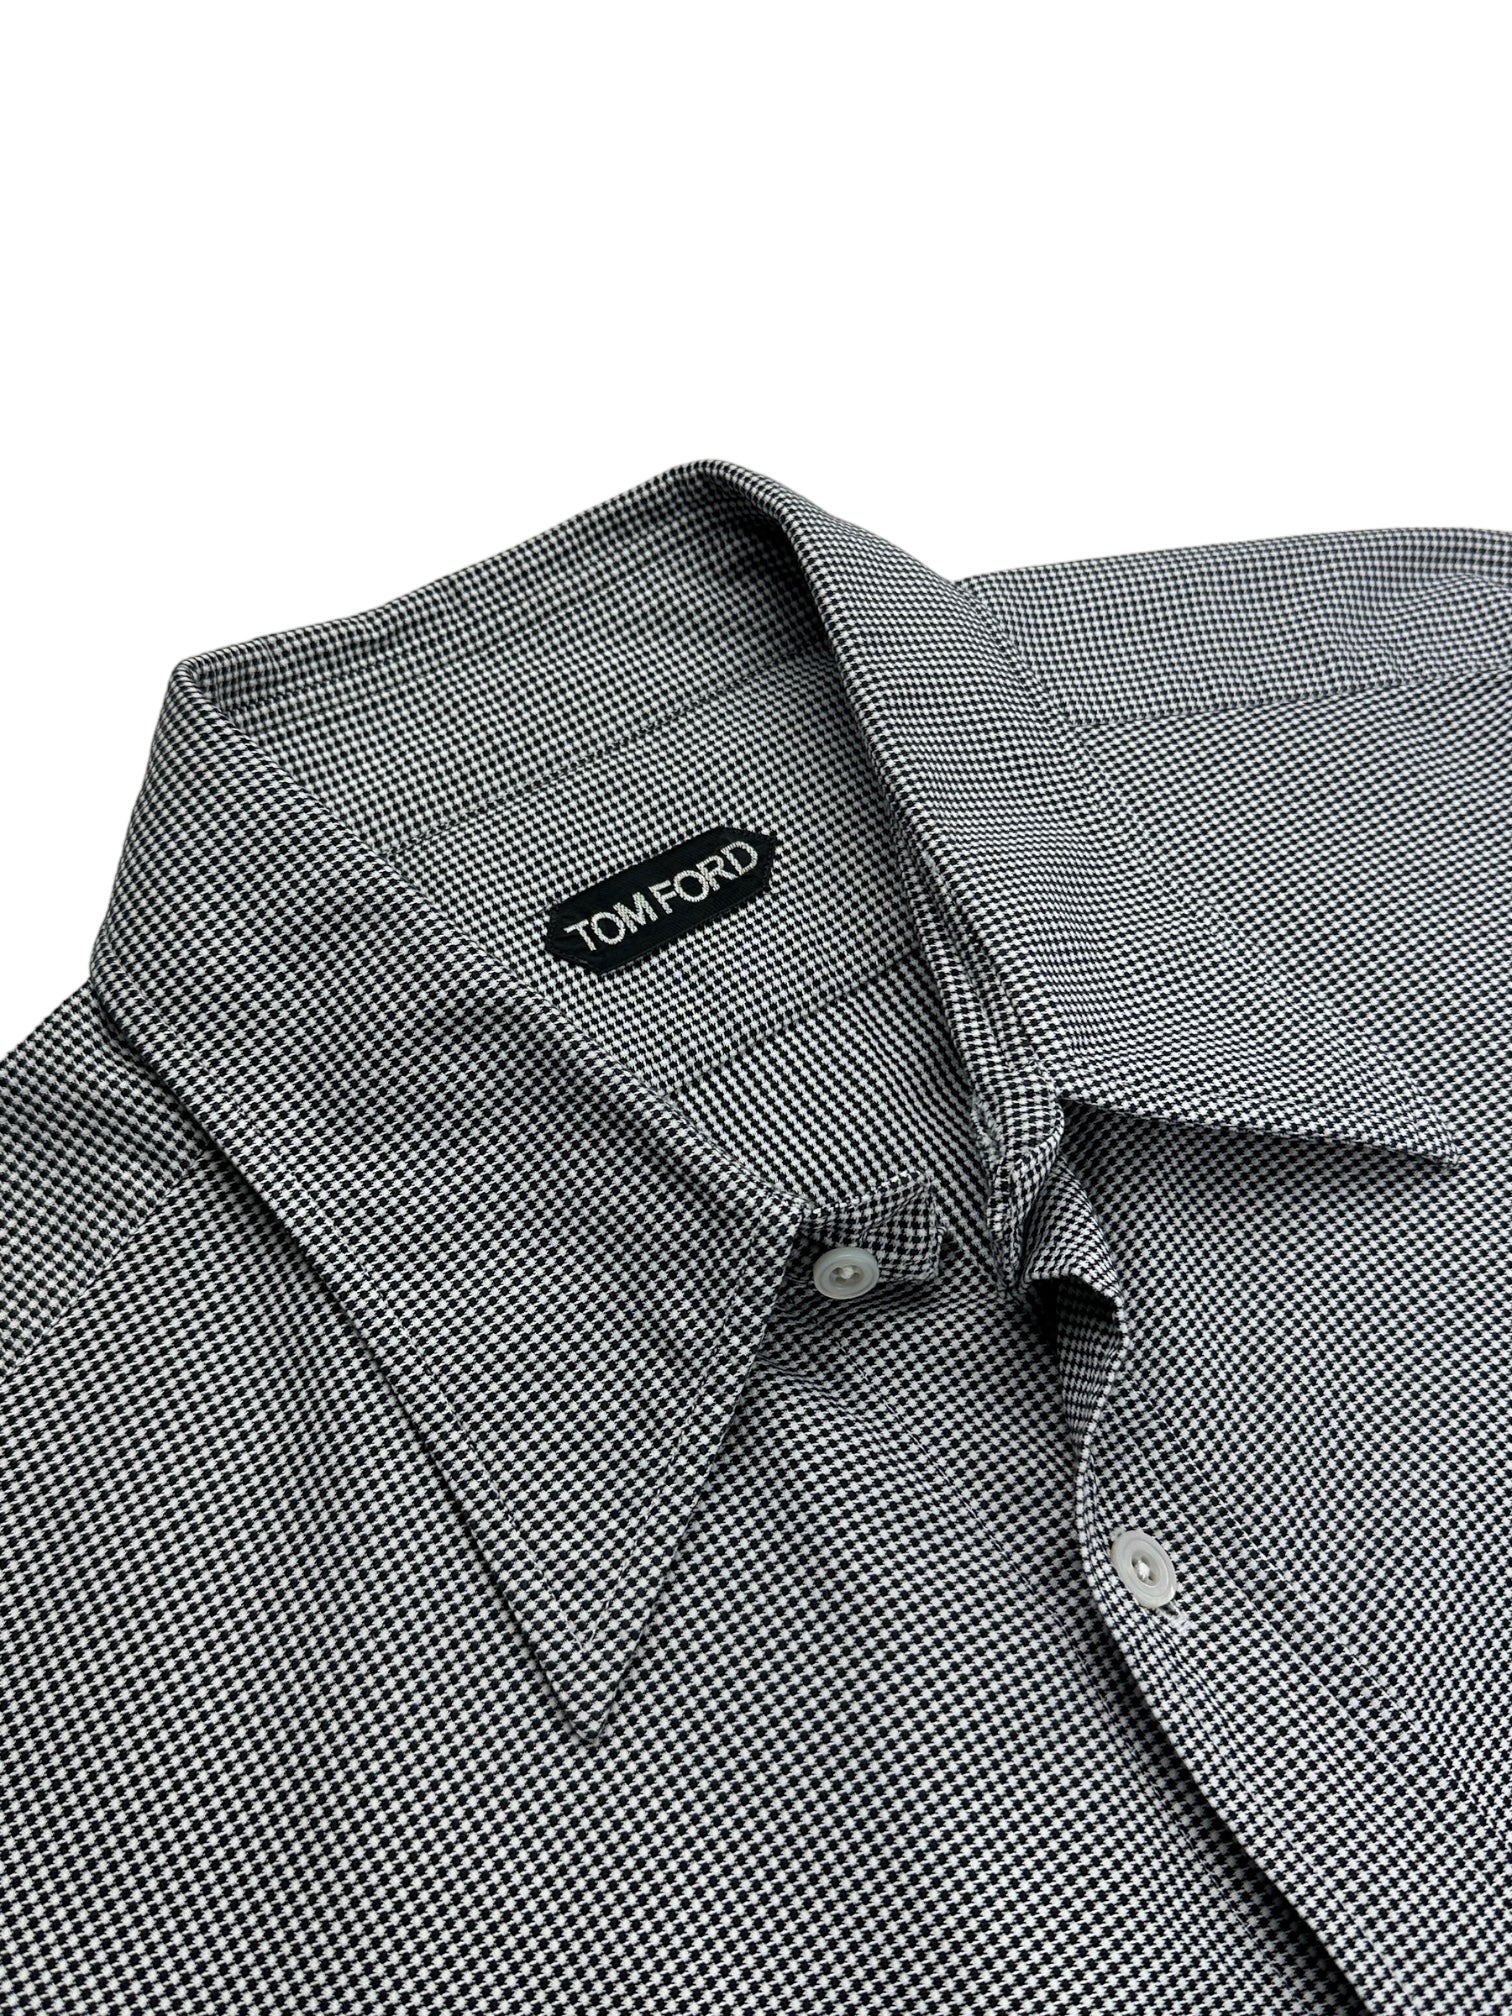 Tom Ford grijs geometrisch shirt